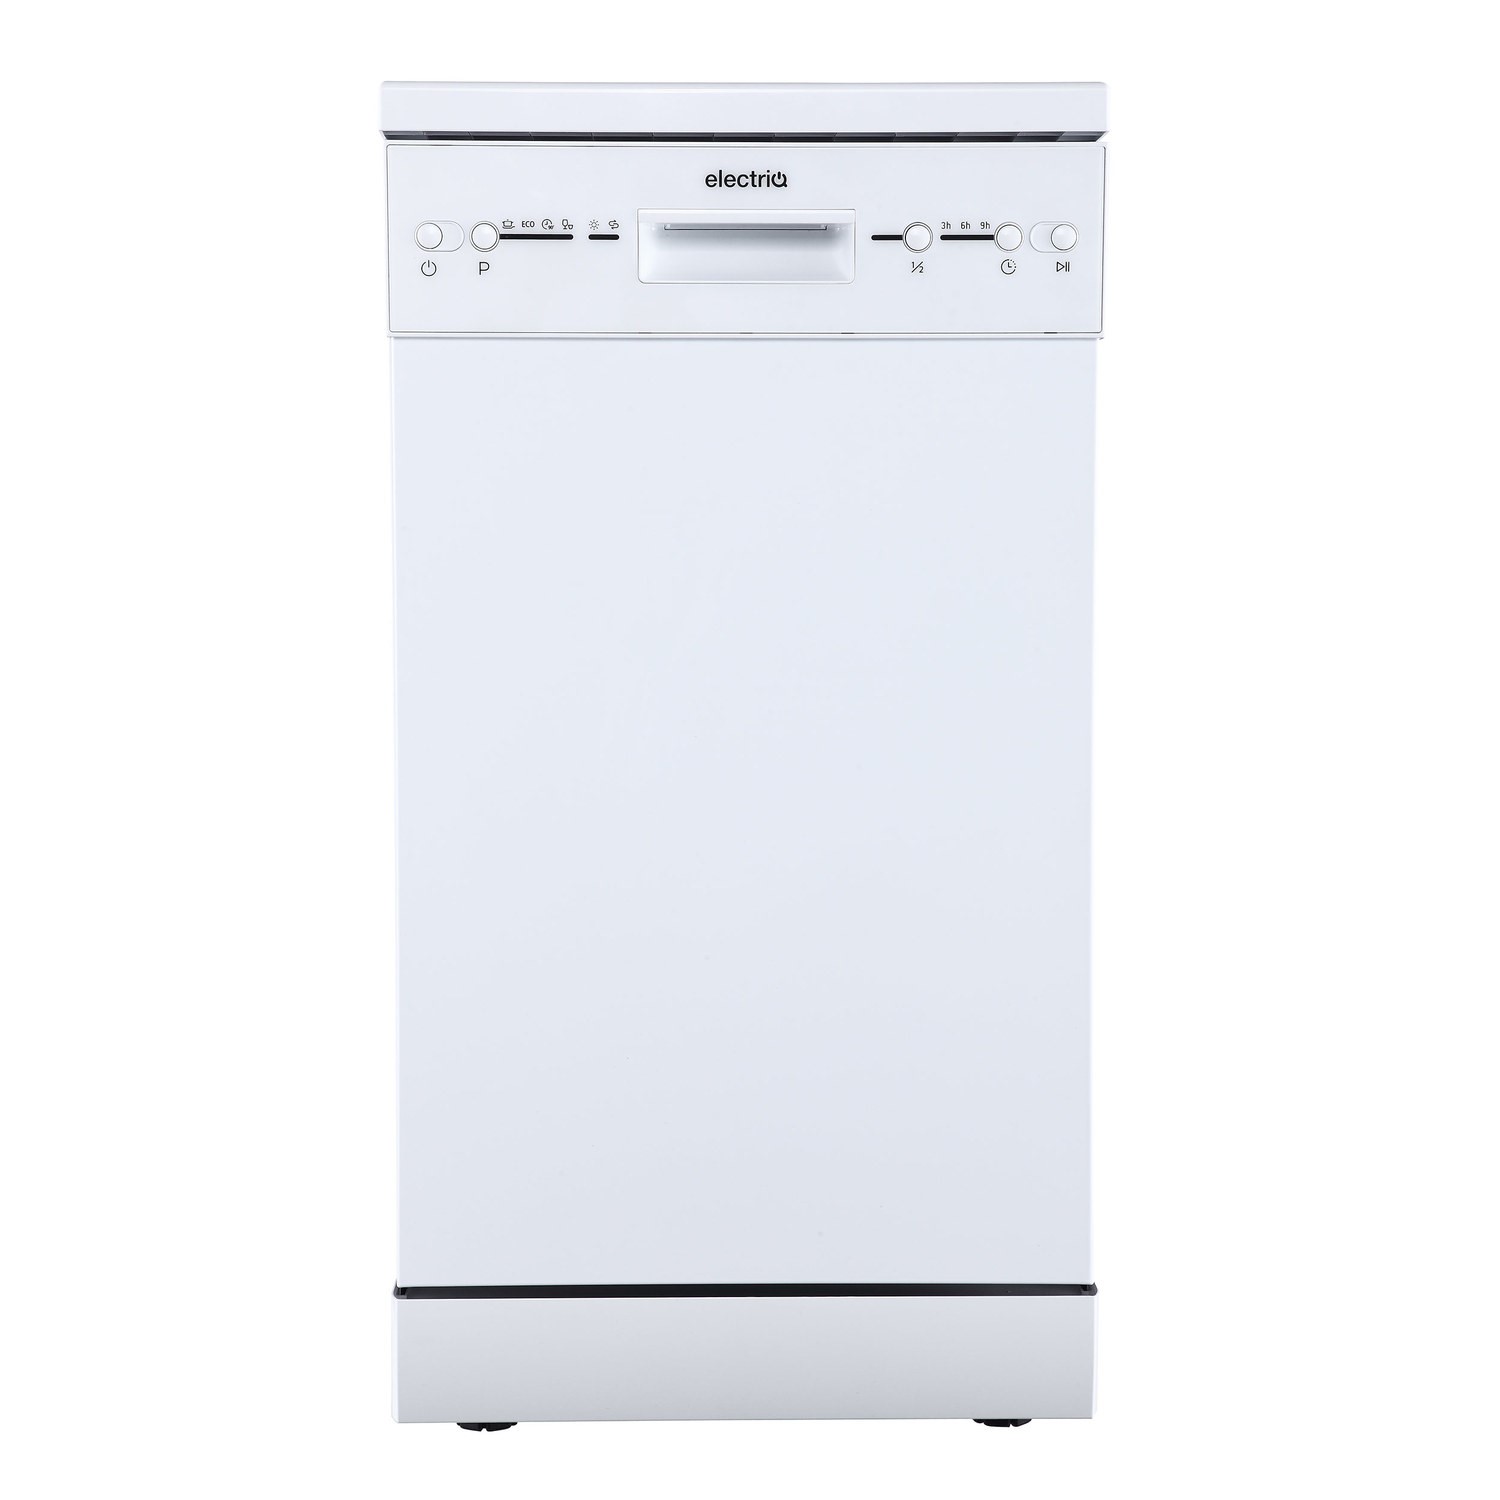 electriQ Slimline Freestanding Dishwasher - White